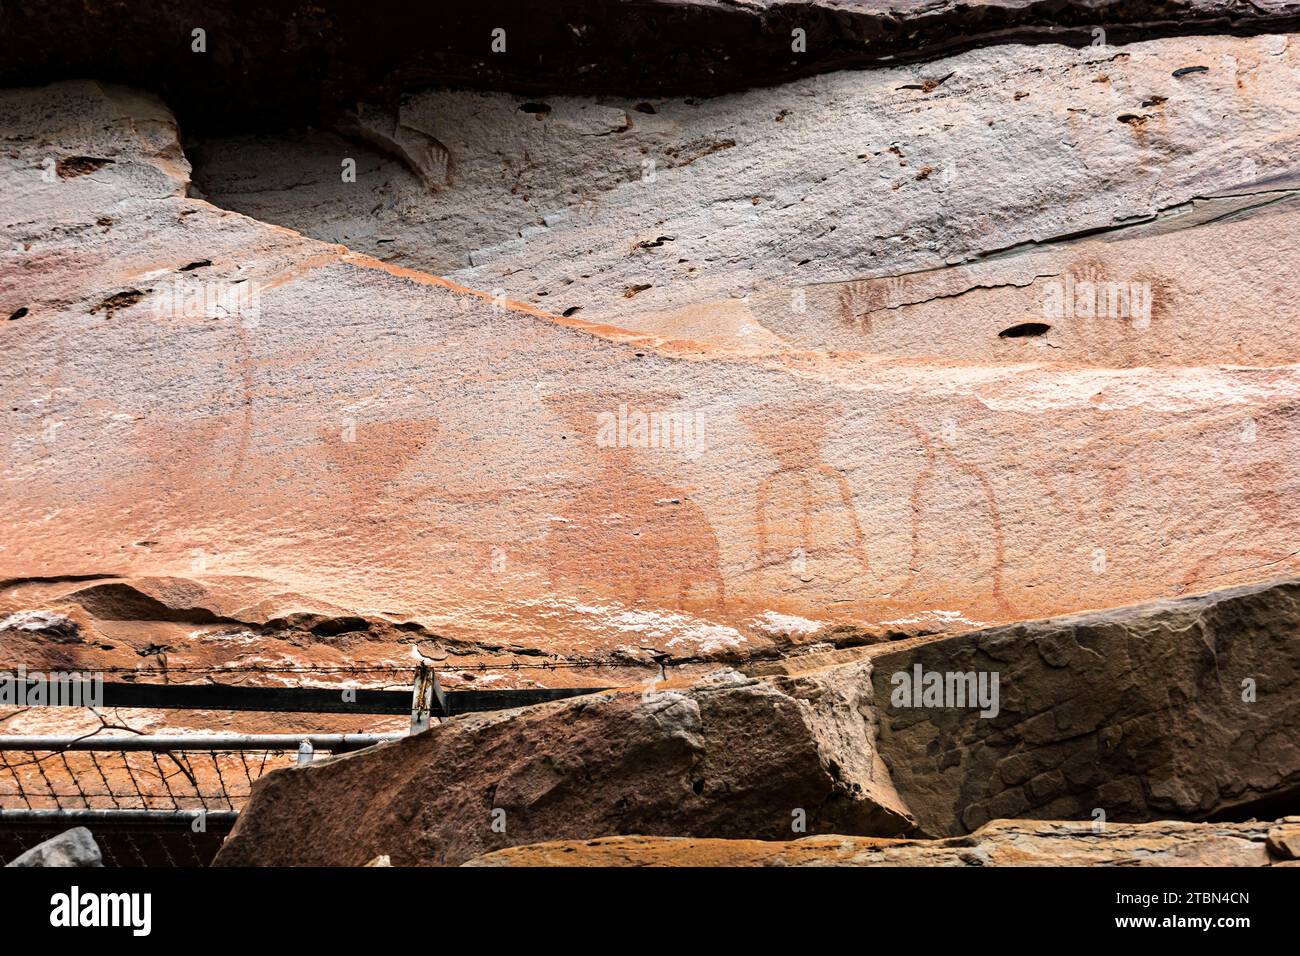 Parco nazionale PHA Taem, dipinti rupestri preistorici sulla scogliera del Mekong (fiume), sito del gruppo 2, Ubon Ratchathani, Isan, Thailandia, sud-est asiatico, Asia Foto Stock